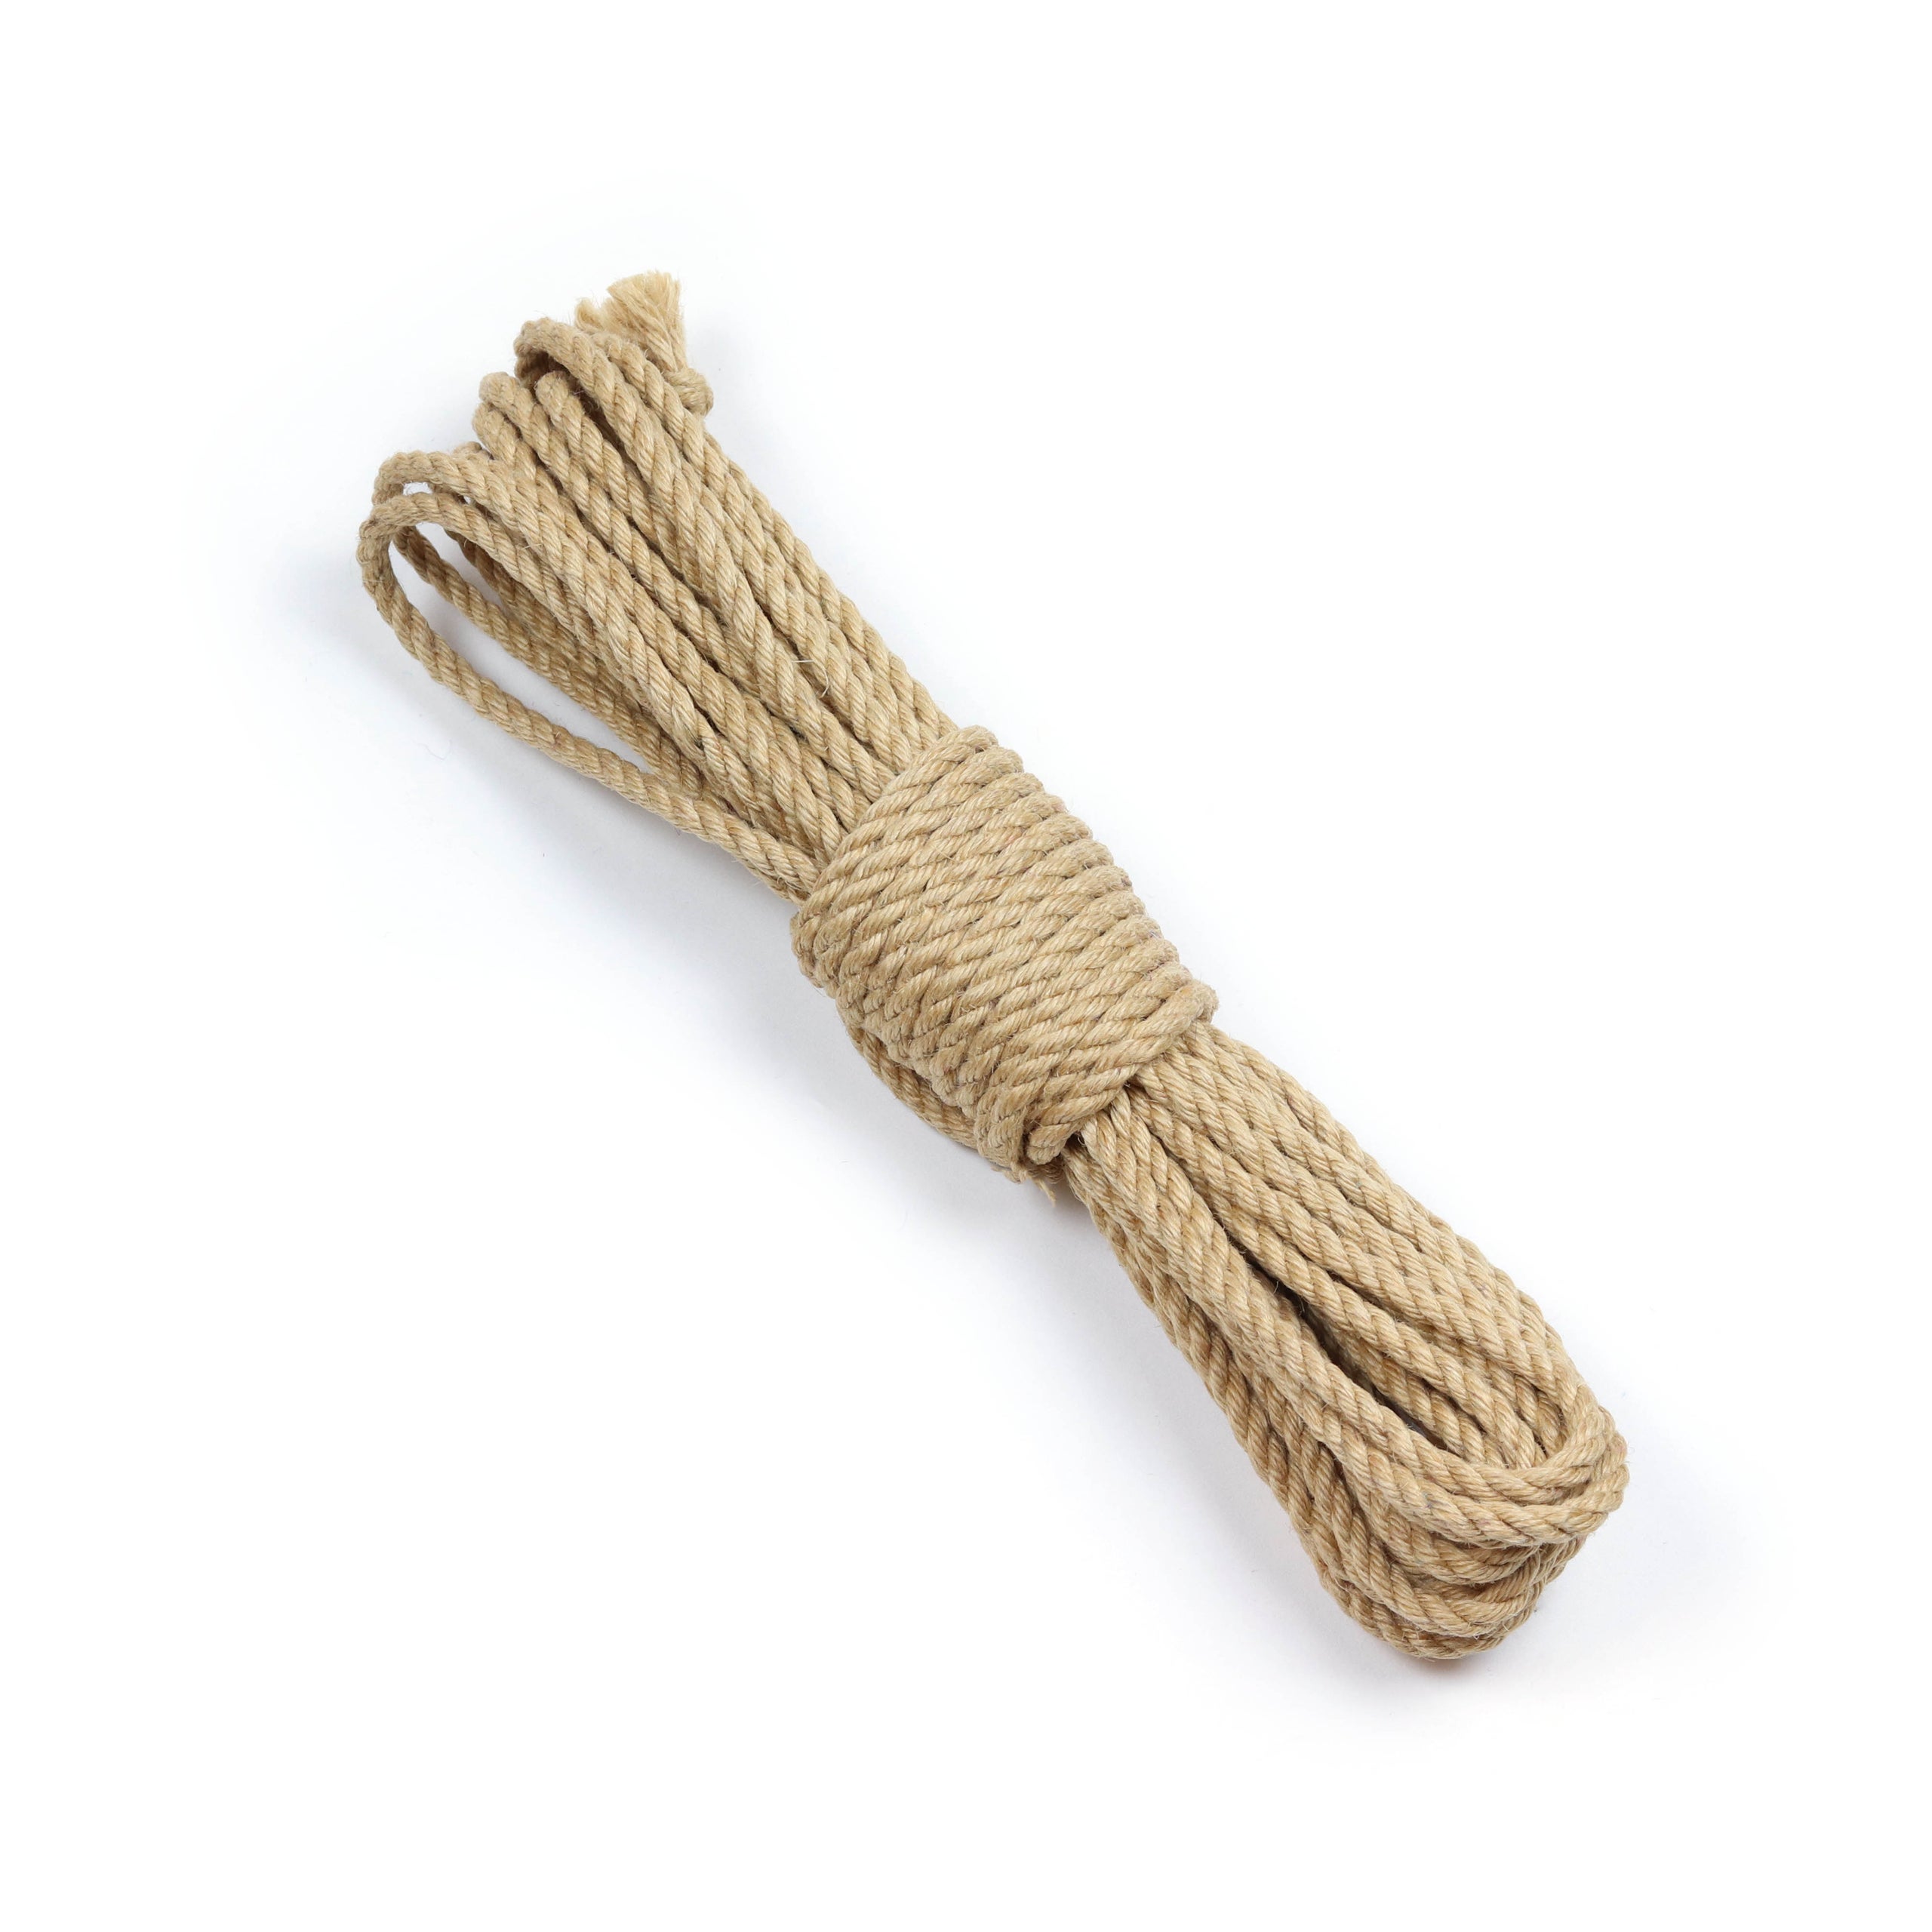 3mm Jute Rope - Natural